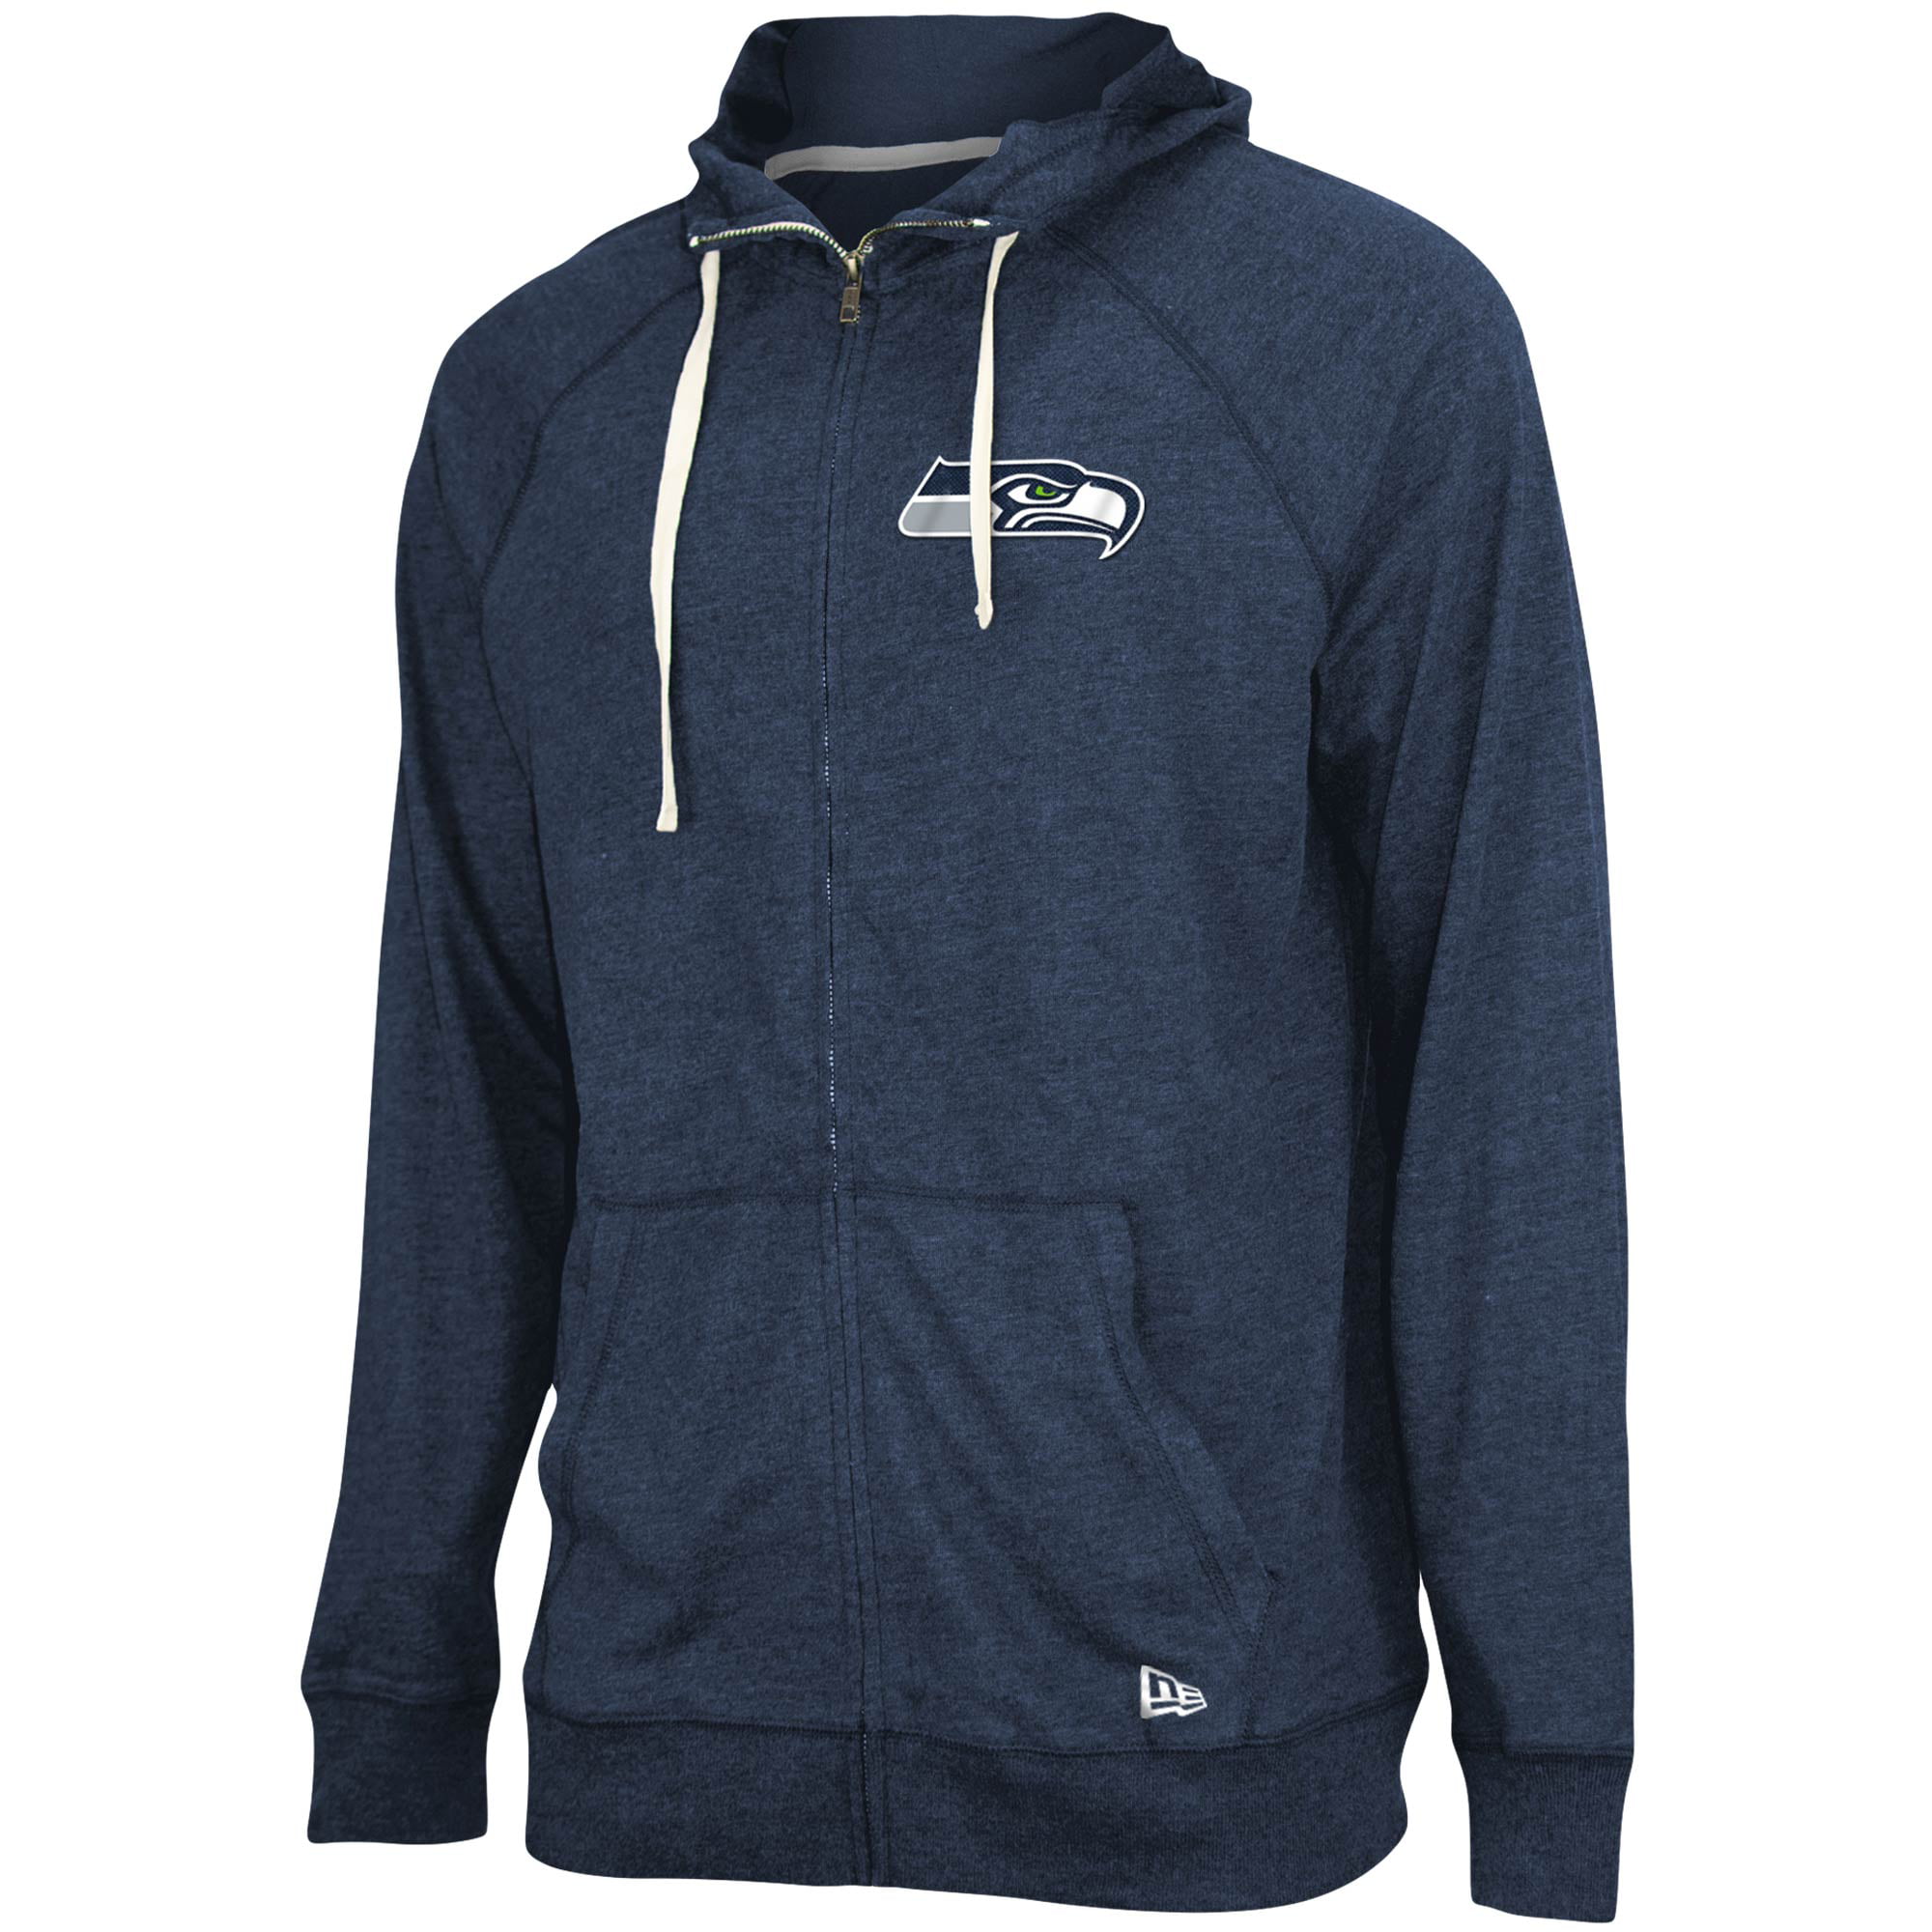 Seattle Seahawks Football Hoodie Hooded Sweatshirt Casual Jacket Zip Up Coat